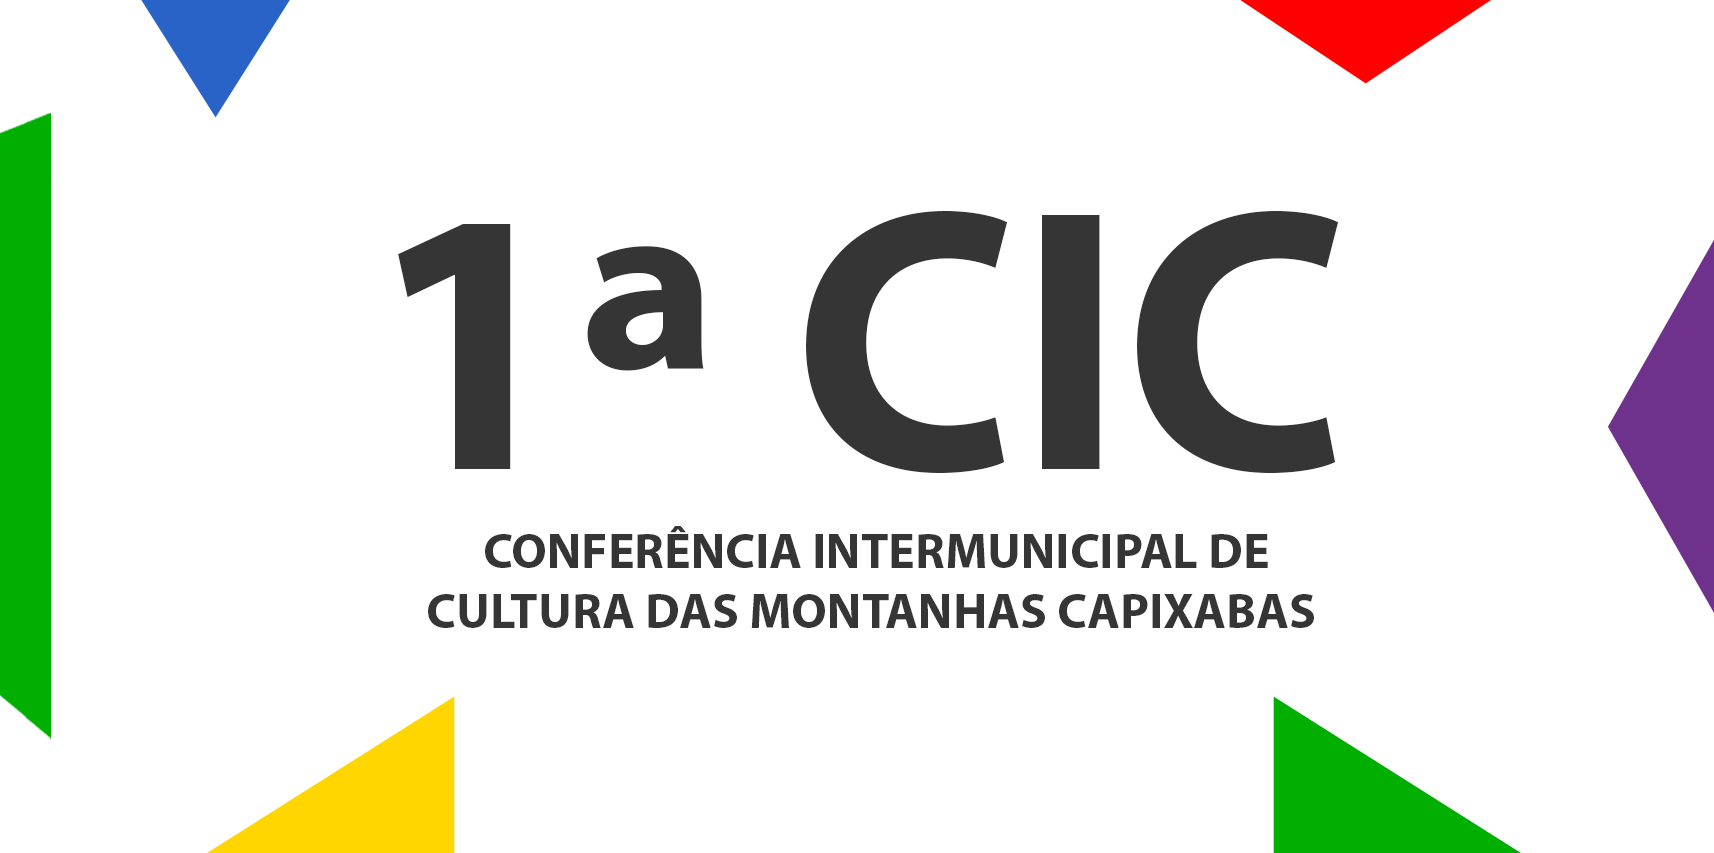 1ª Conferência Intermunicipal de Cultura das Montanhas Capixabas promoverá debates sobre Democracia e Direito à Cultura